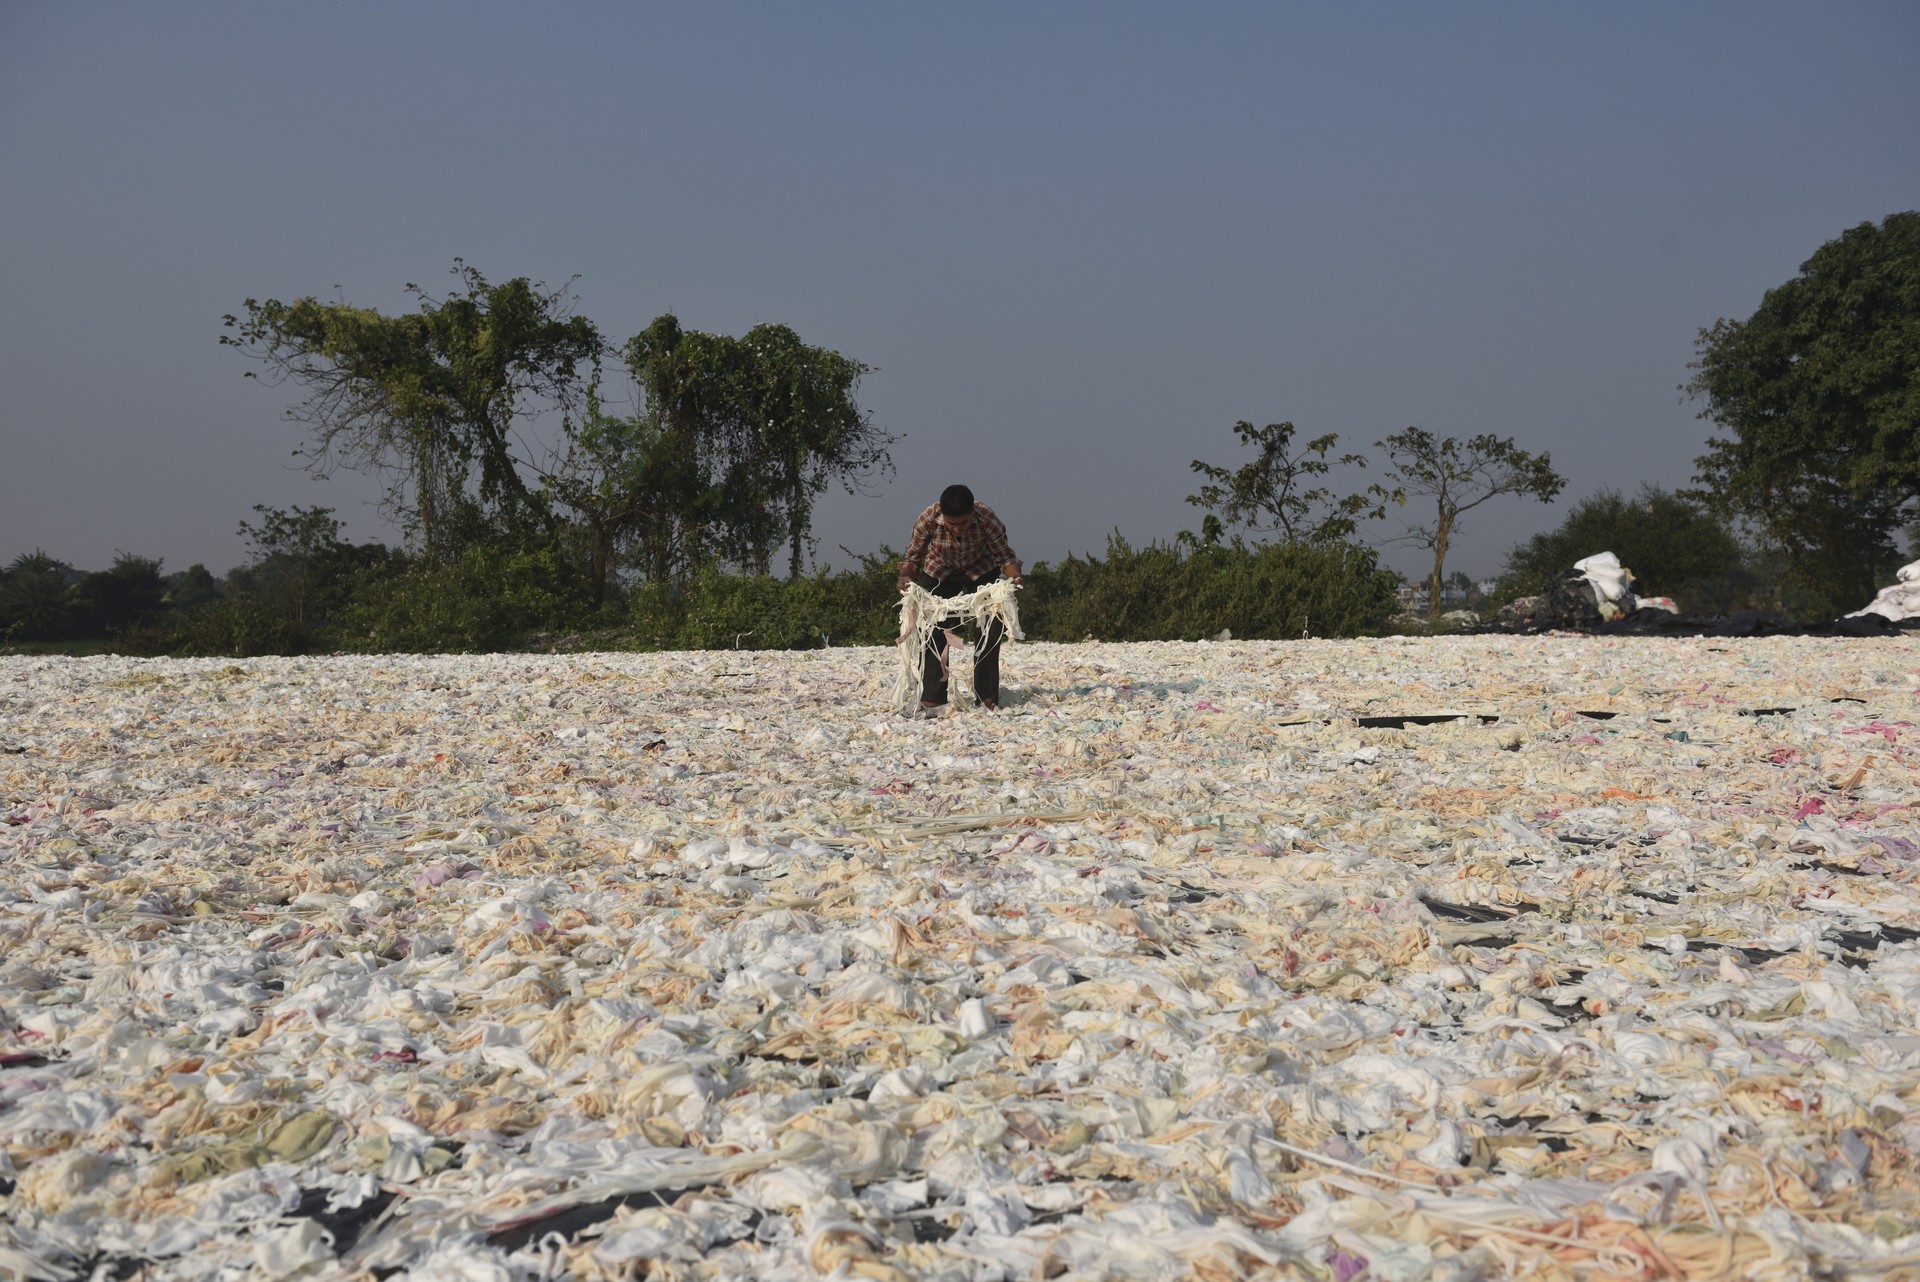 Recyclage de textiles en Inde